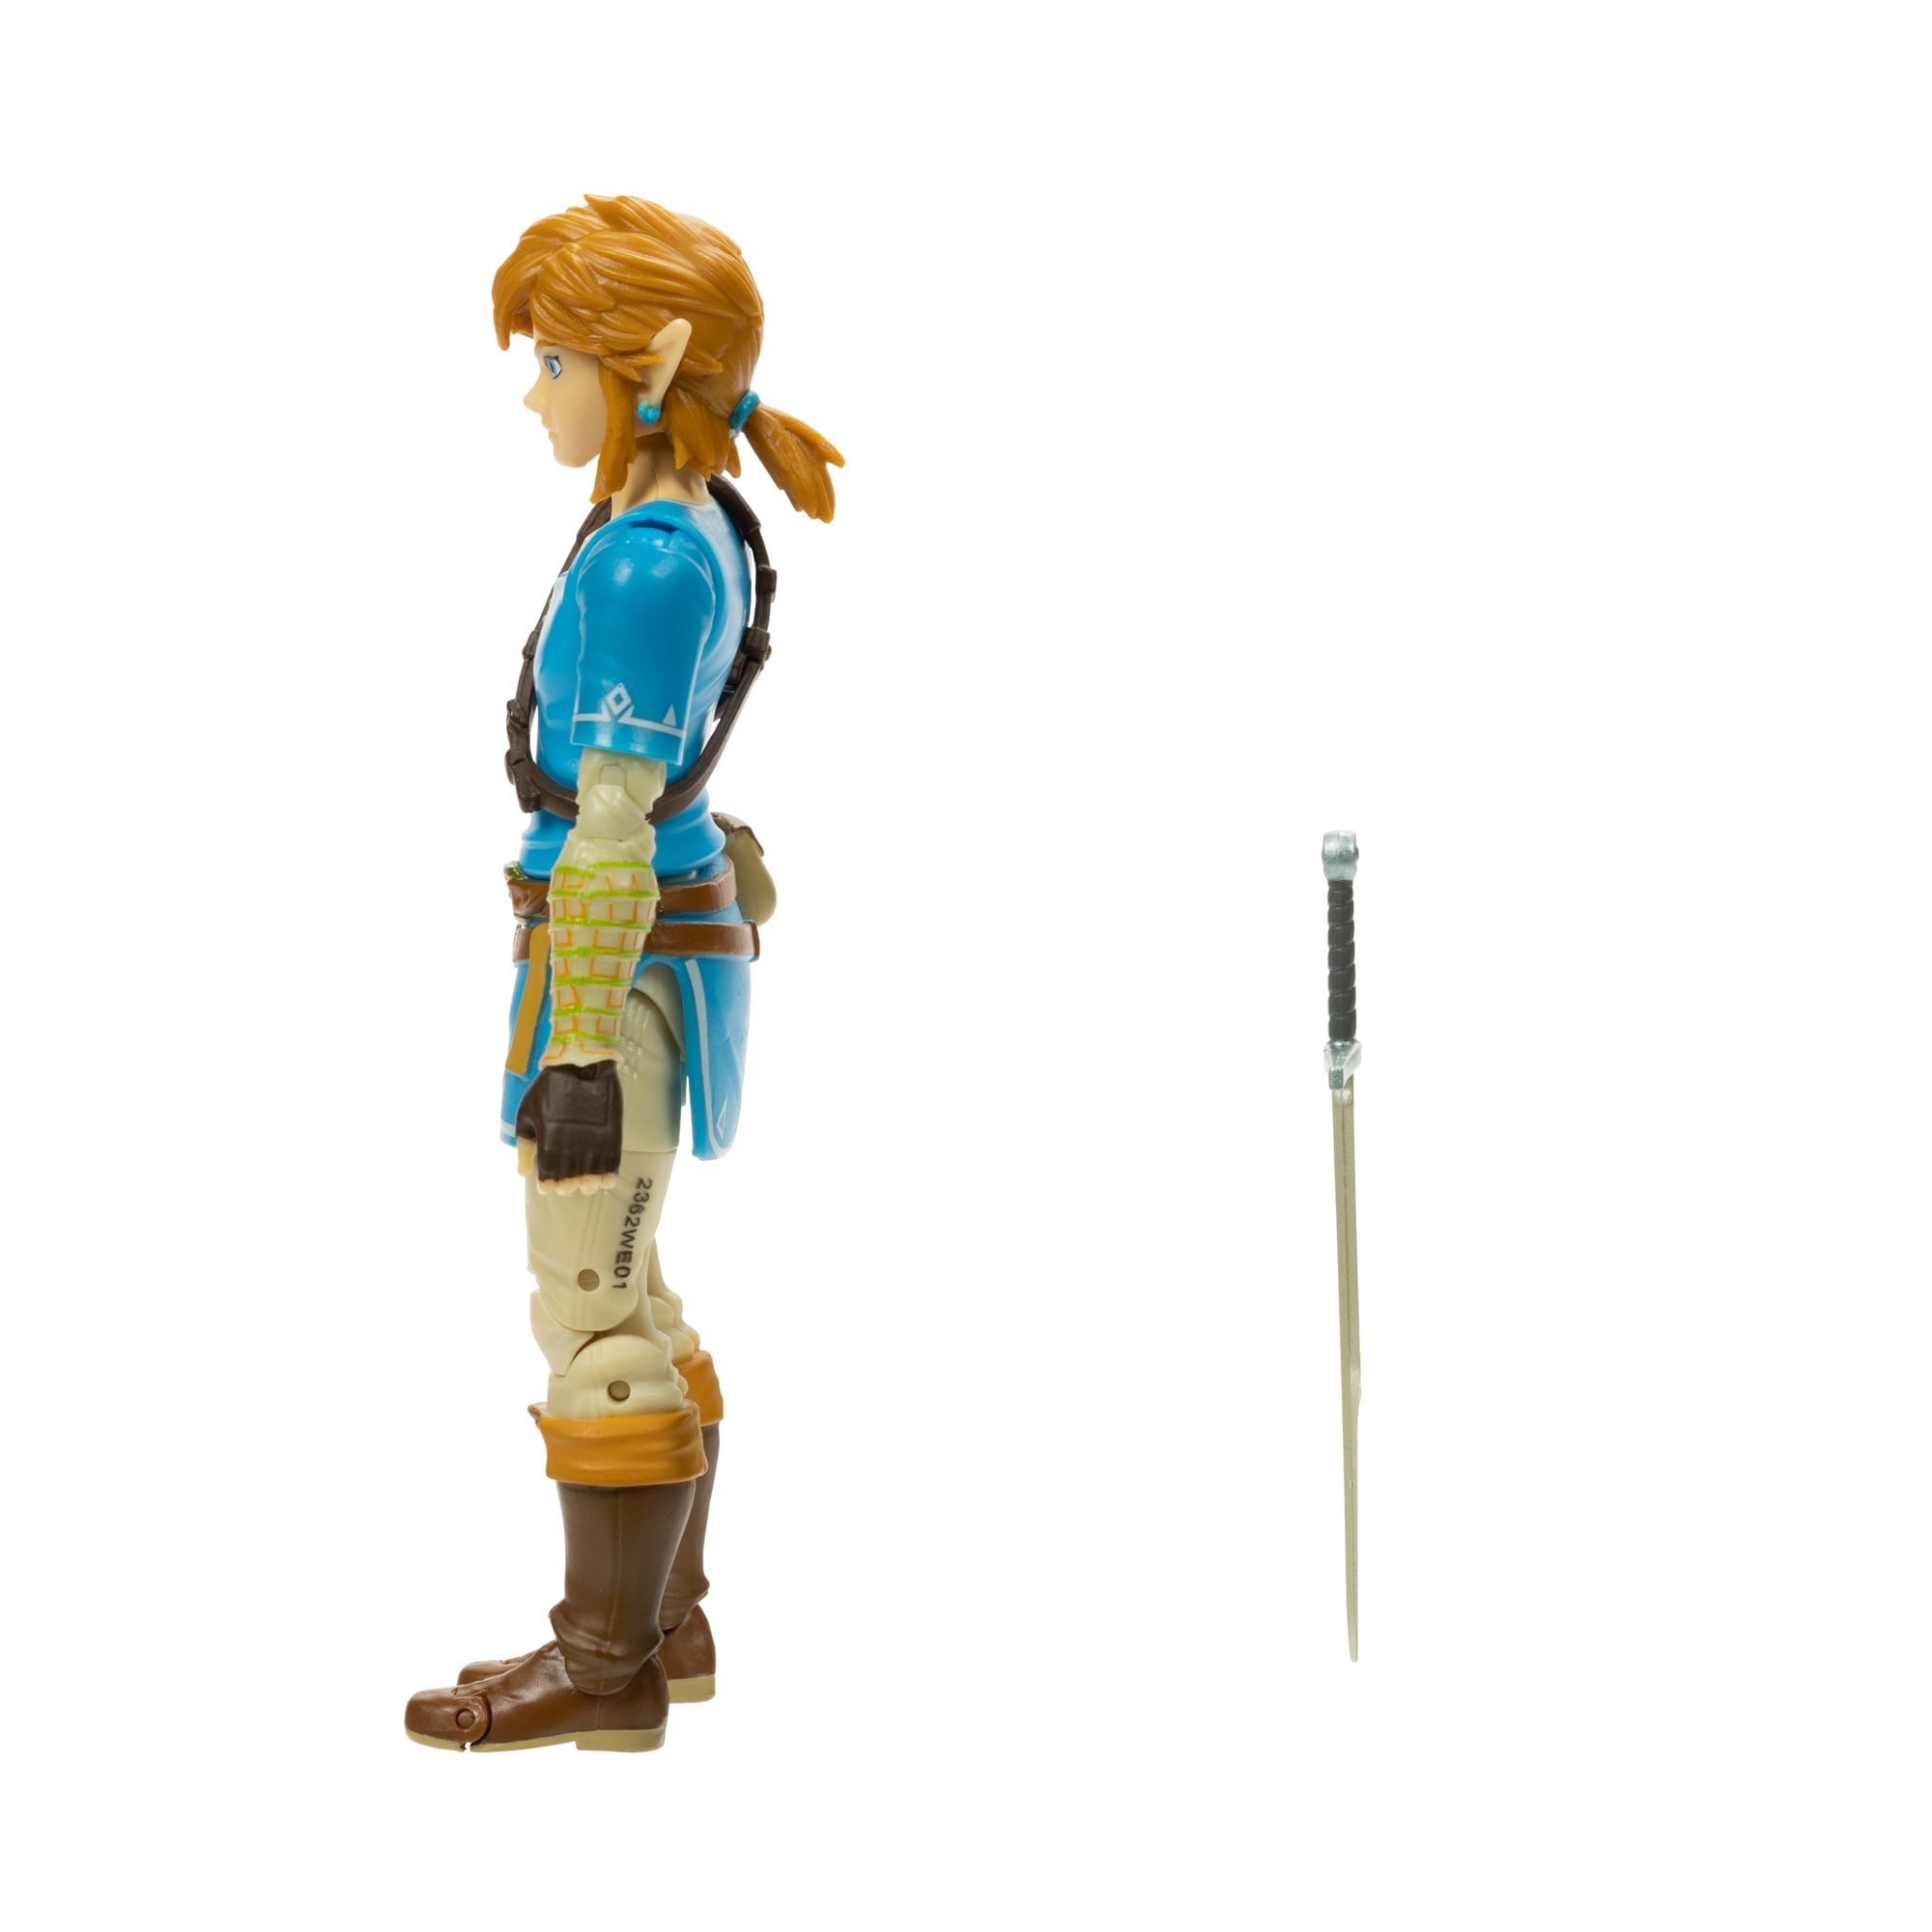 Legend of Zelda Breath of the Wild Link Action Figure - World of Nintendo -  SUPER MARIO ODYSSEY